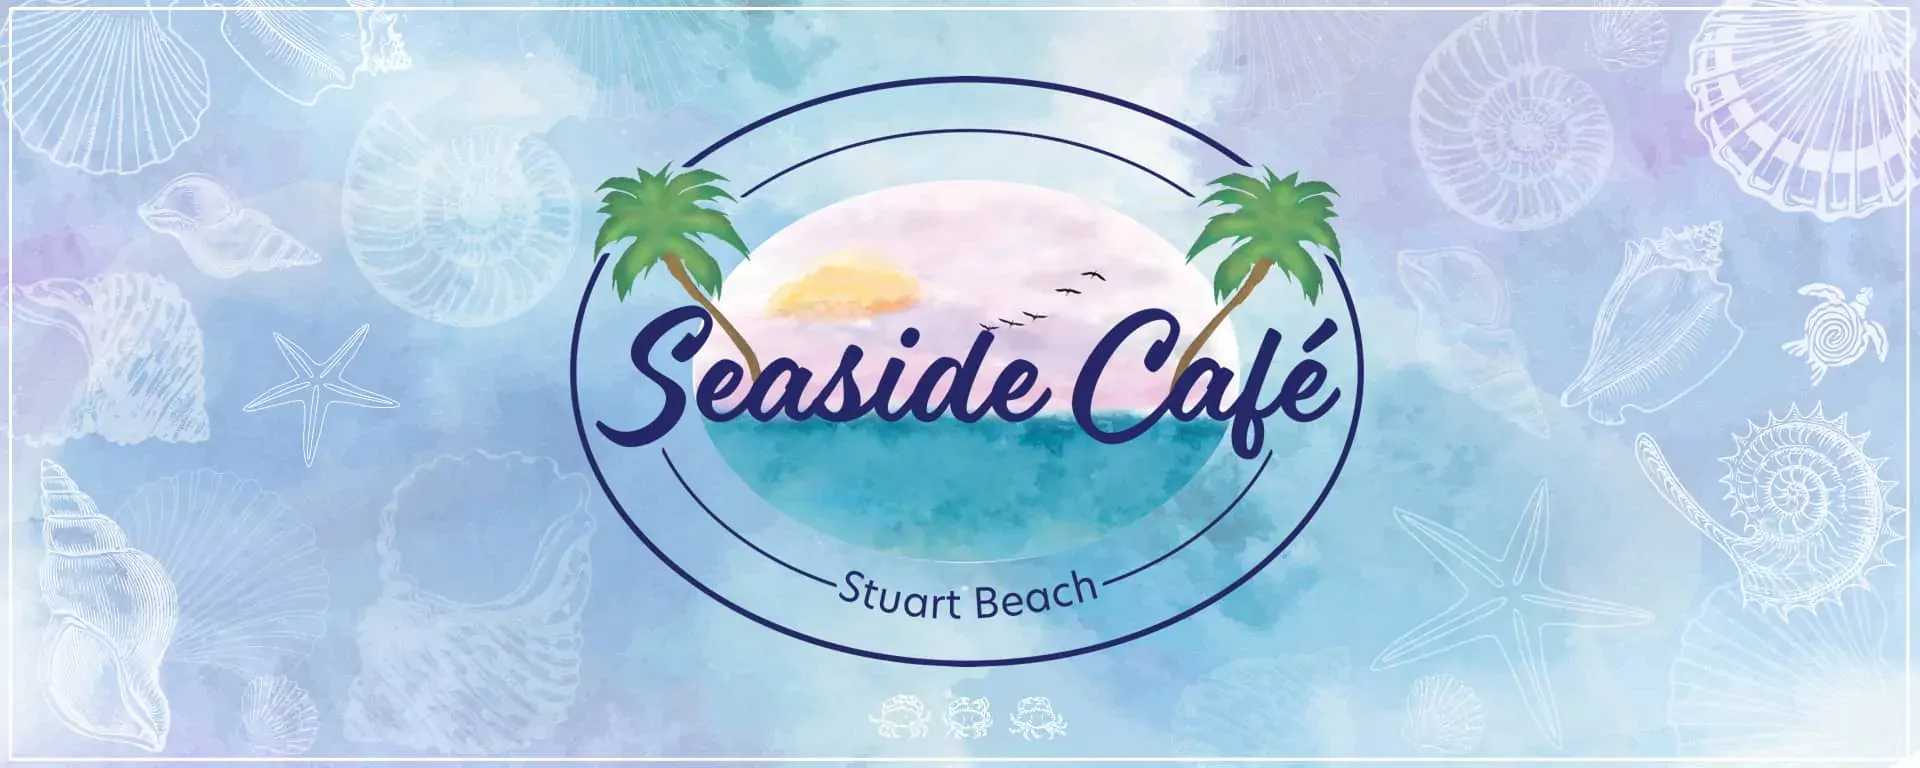 Seaside Cafe and logo